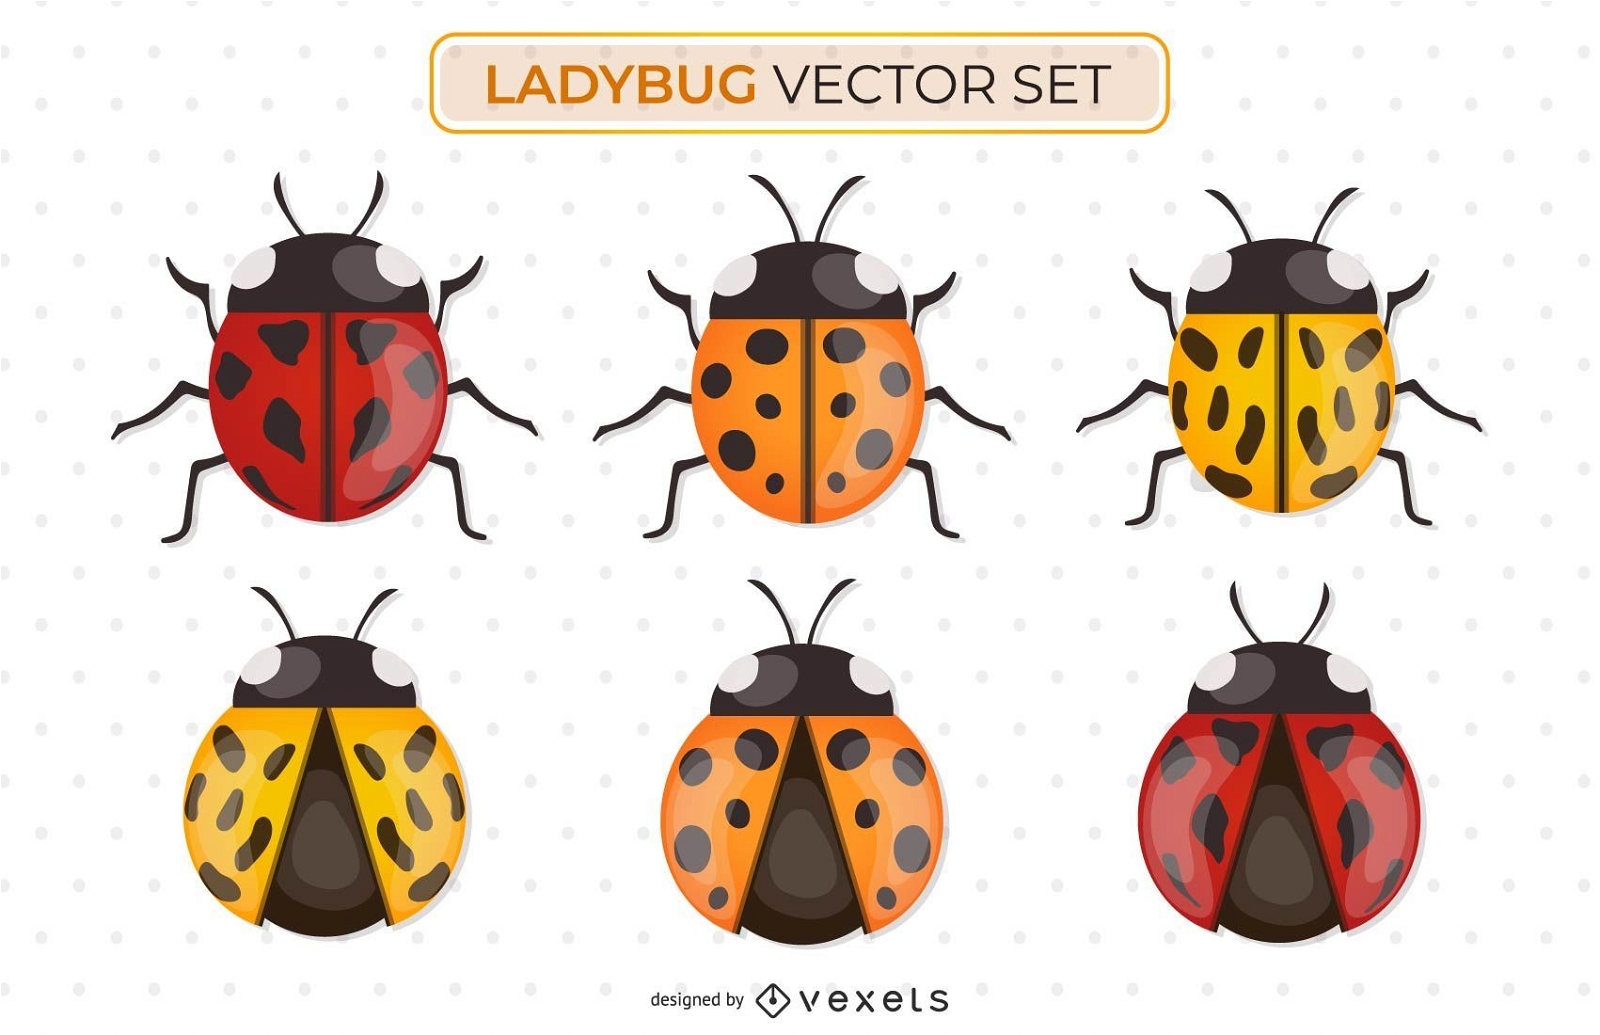 Ladybug vector set